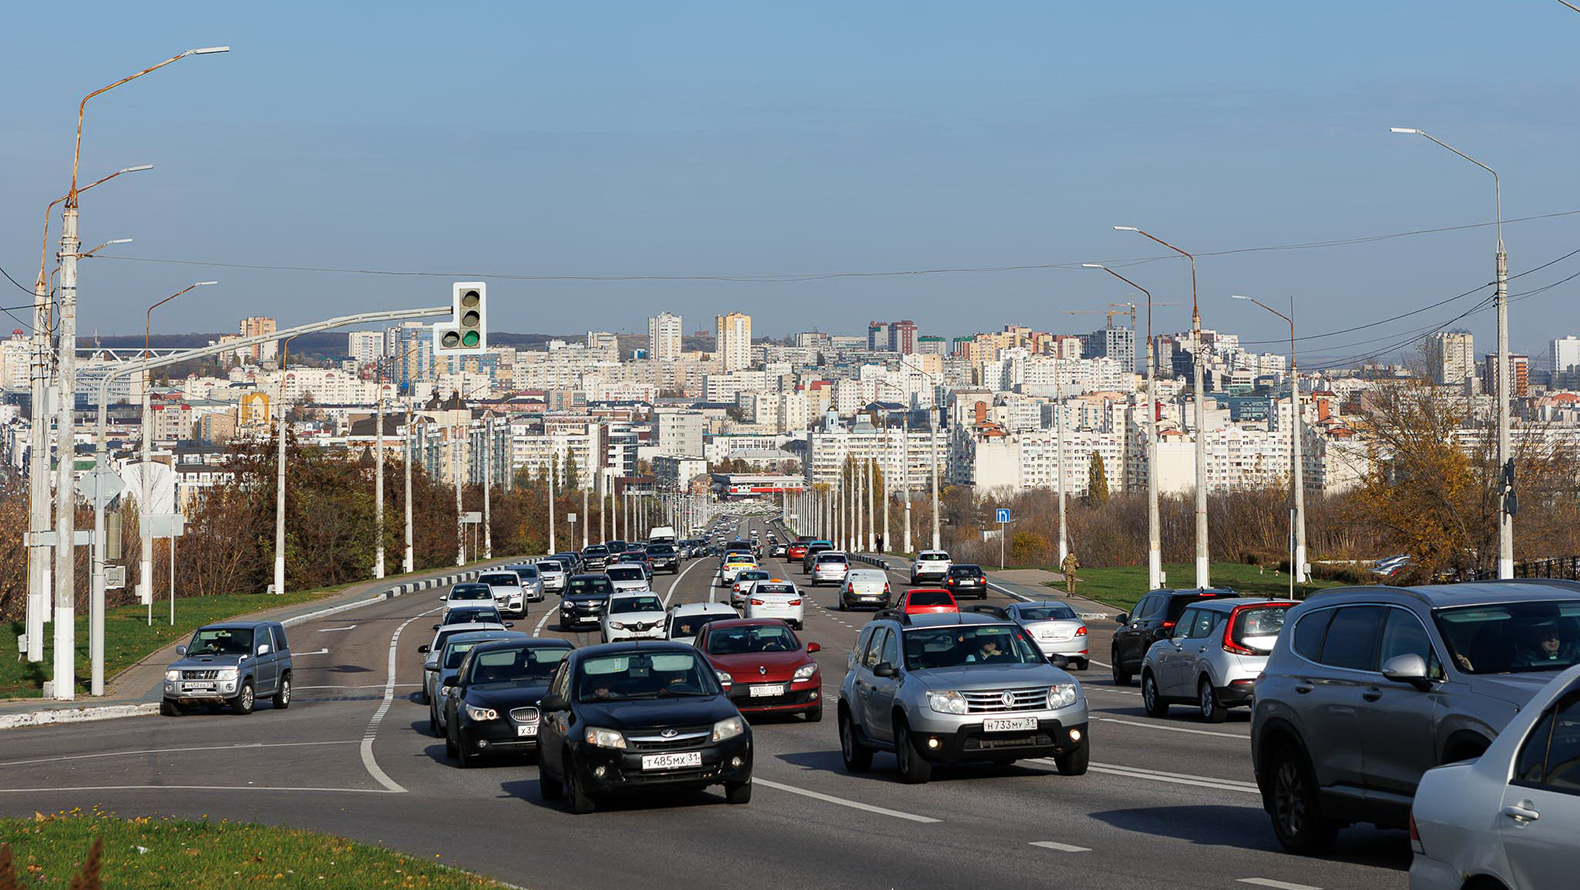 
                     В Белгороде прекратили полив дорог в жару из-за жалоб автомобилистов  
                